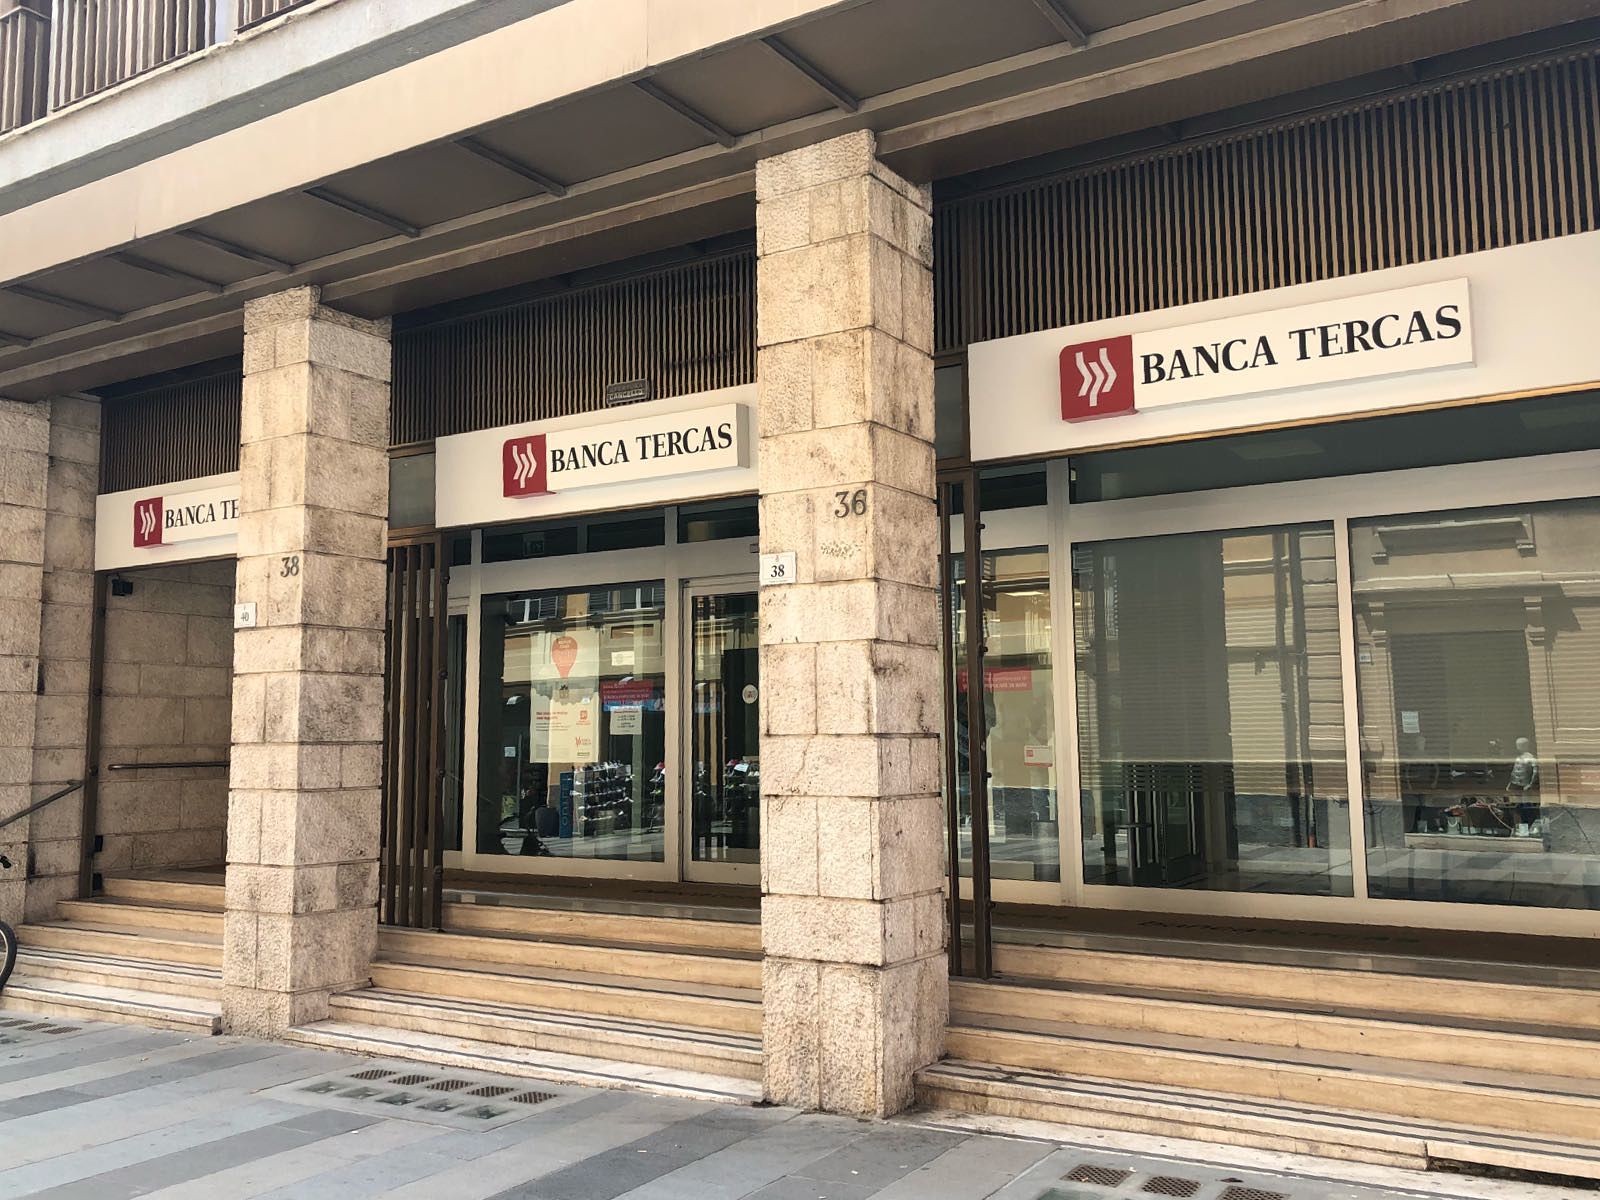 Ultime Notizie Banca Tercas Tutte E News Su Banca Tercas In Tempo Reale